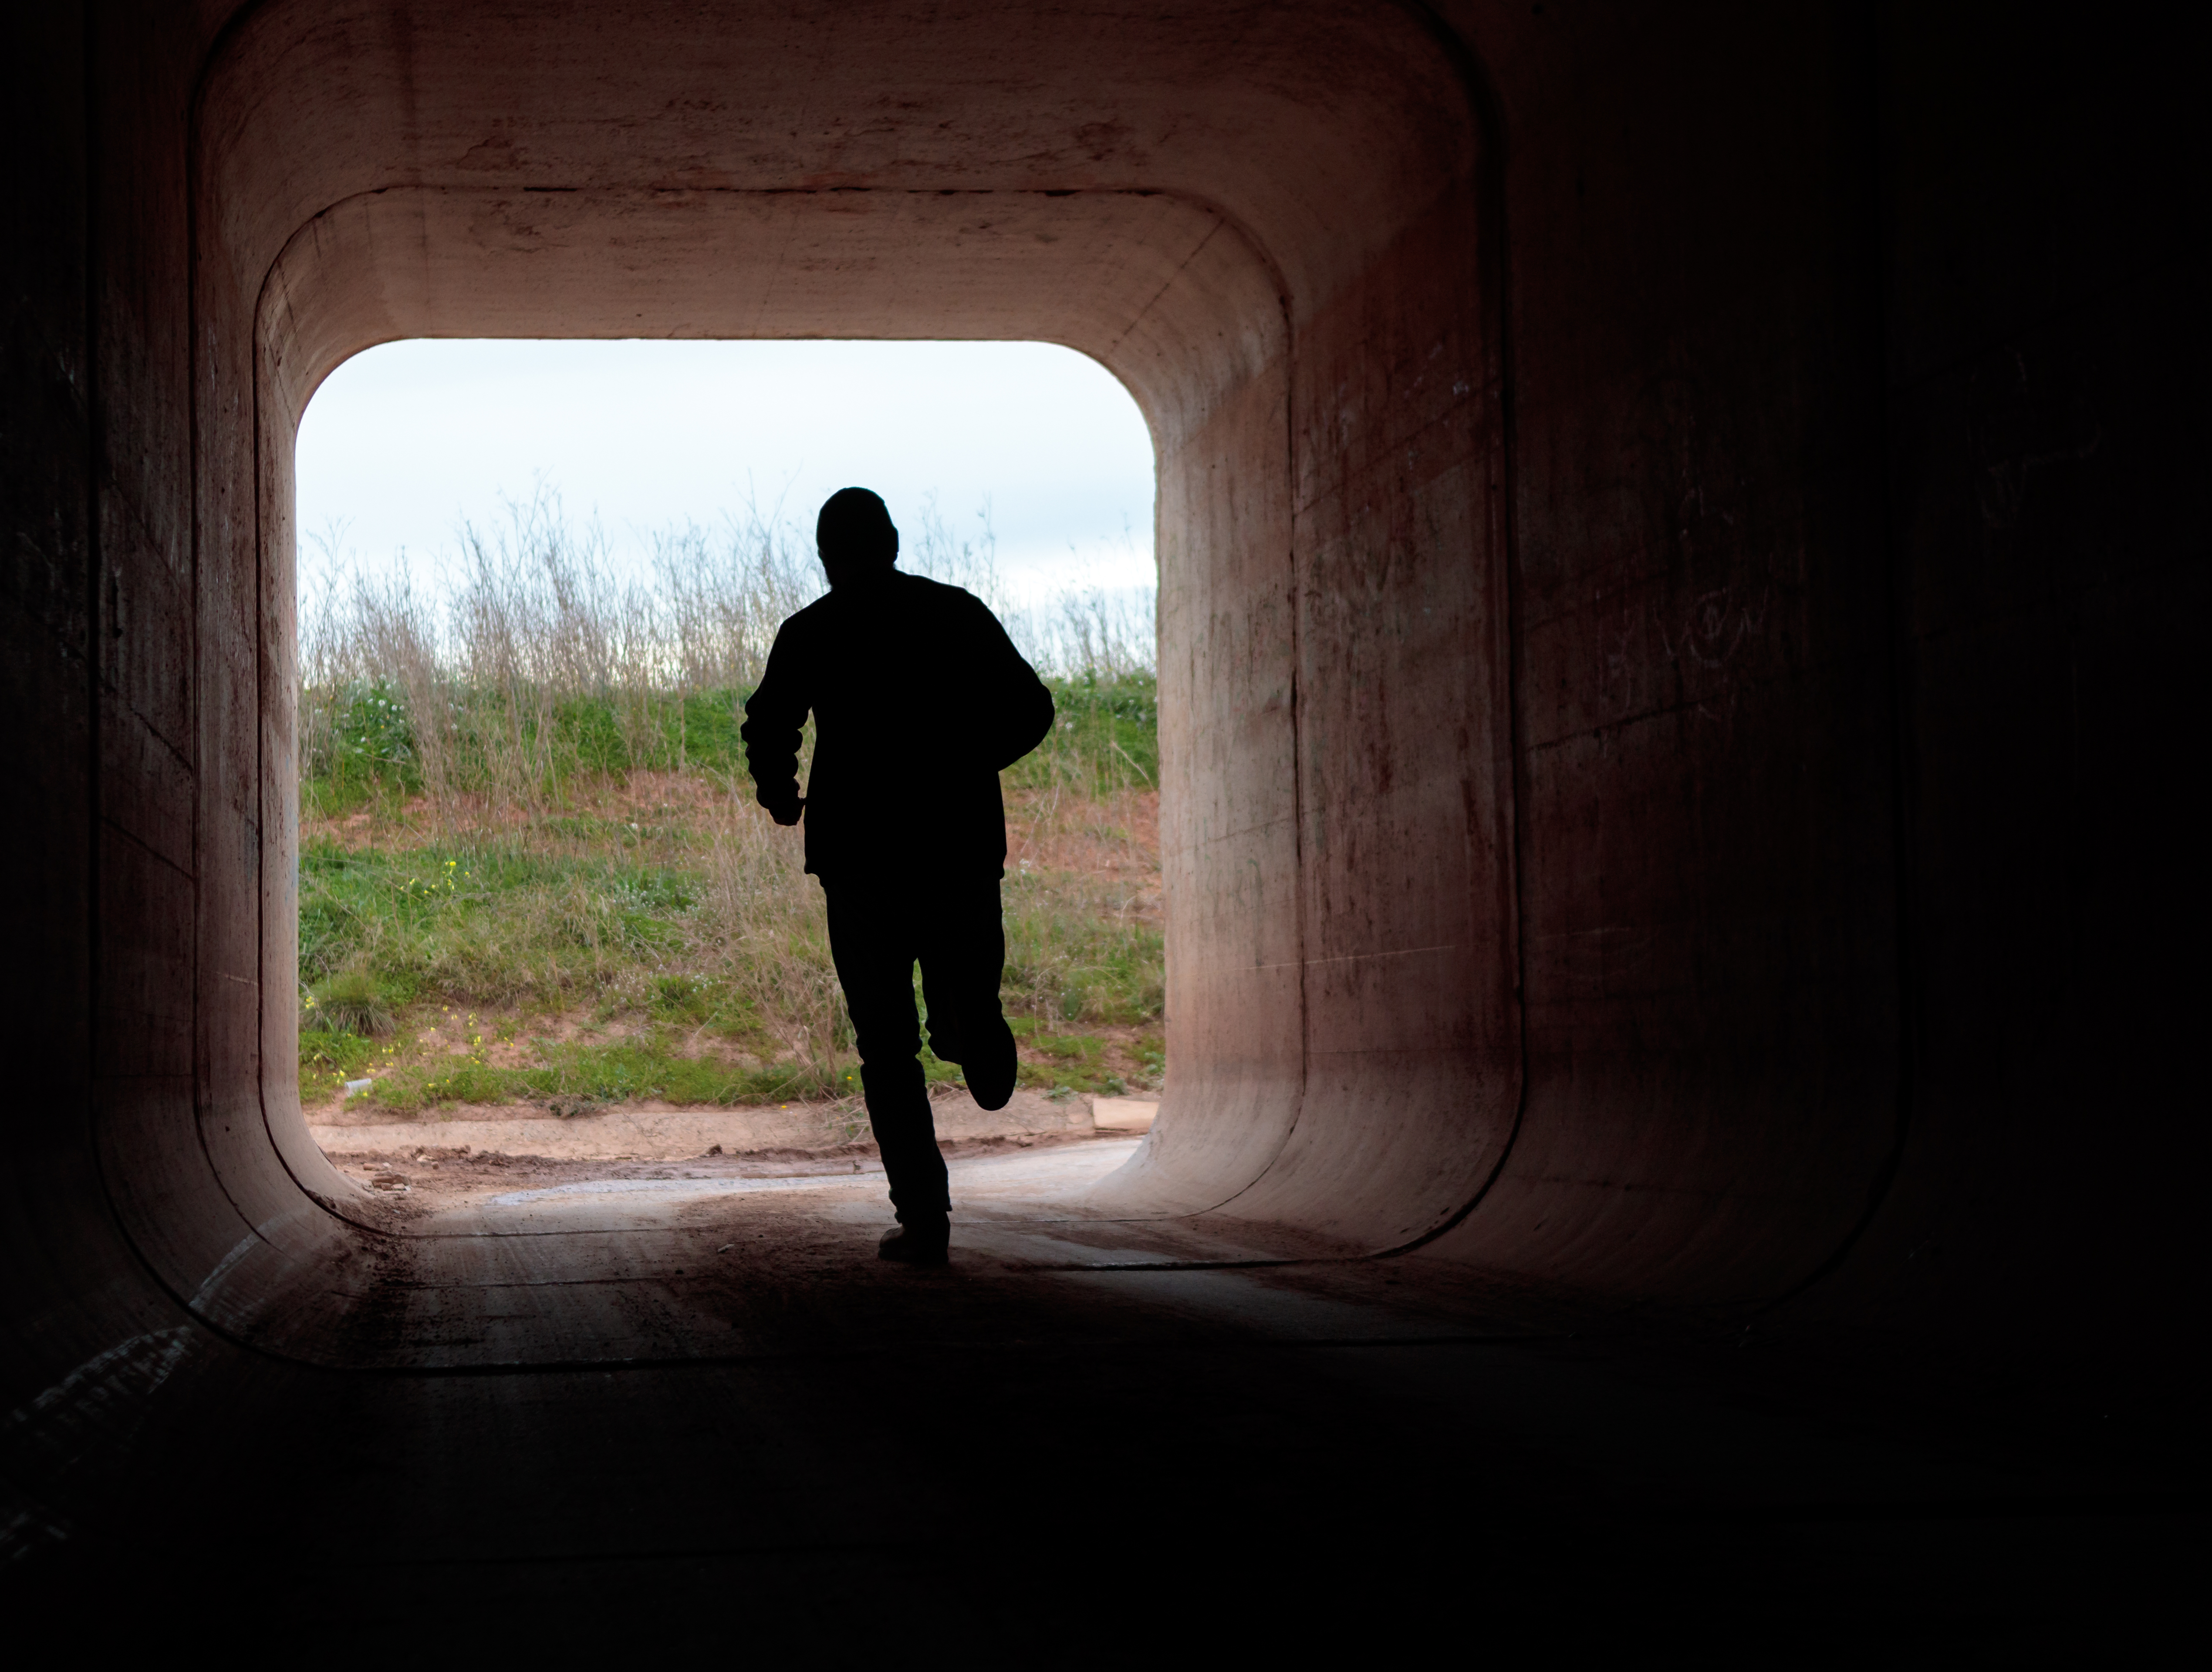 Man running through dark tunnel | Source: Shutterstock